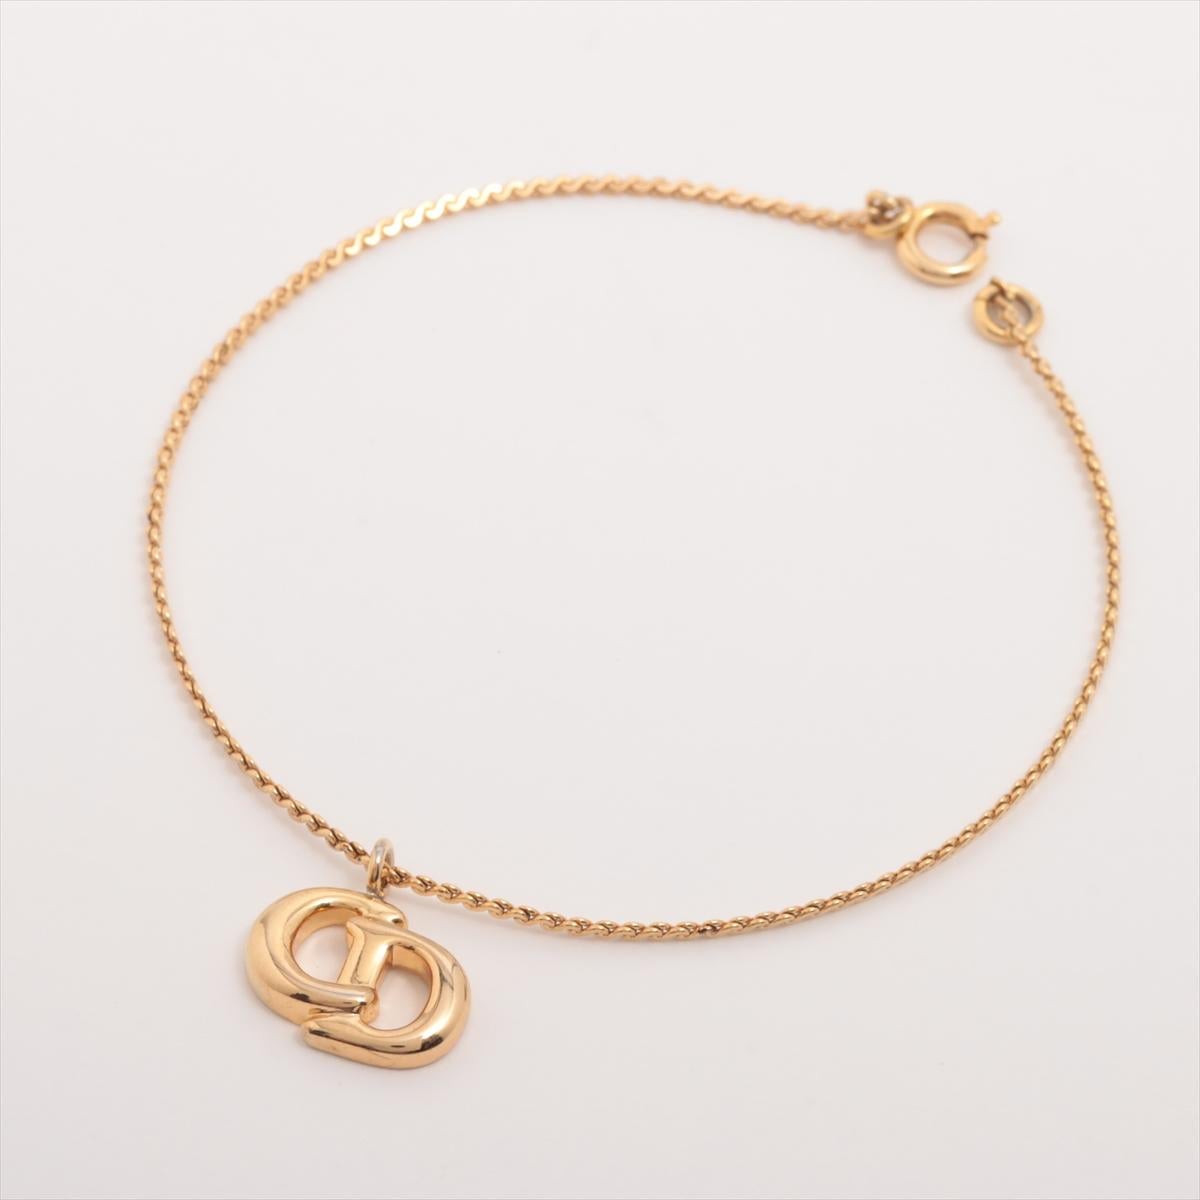 Das Christian Dior CD Logo Rope Chain Armband ist ein auffälliges und vielseitiges Schmuckstück, das klassische Eleganz mit einem Hauch von zeitgenössischem Stil verbindet. Das Armband ist sorgfältig verarbeitet und verfügt über eine seilartige